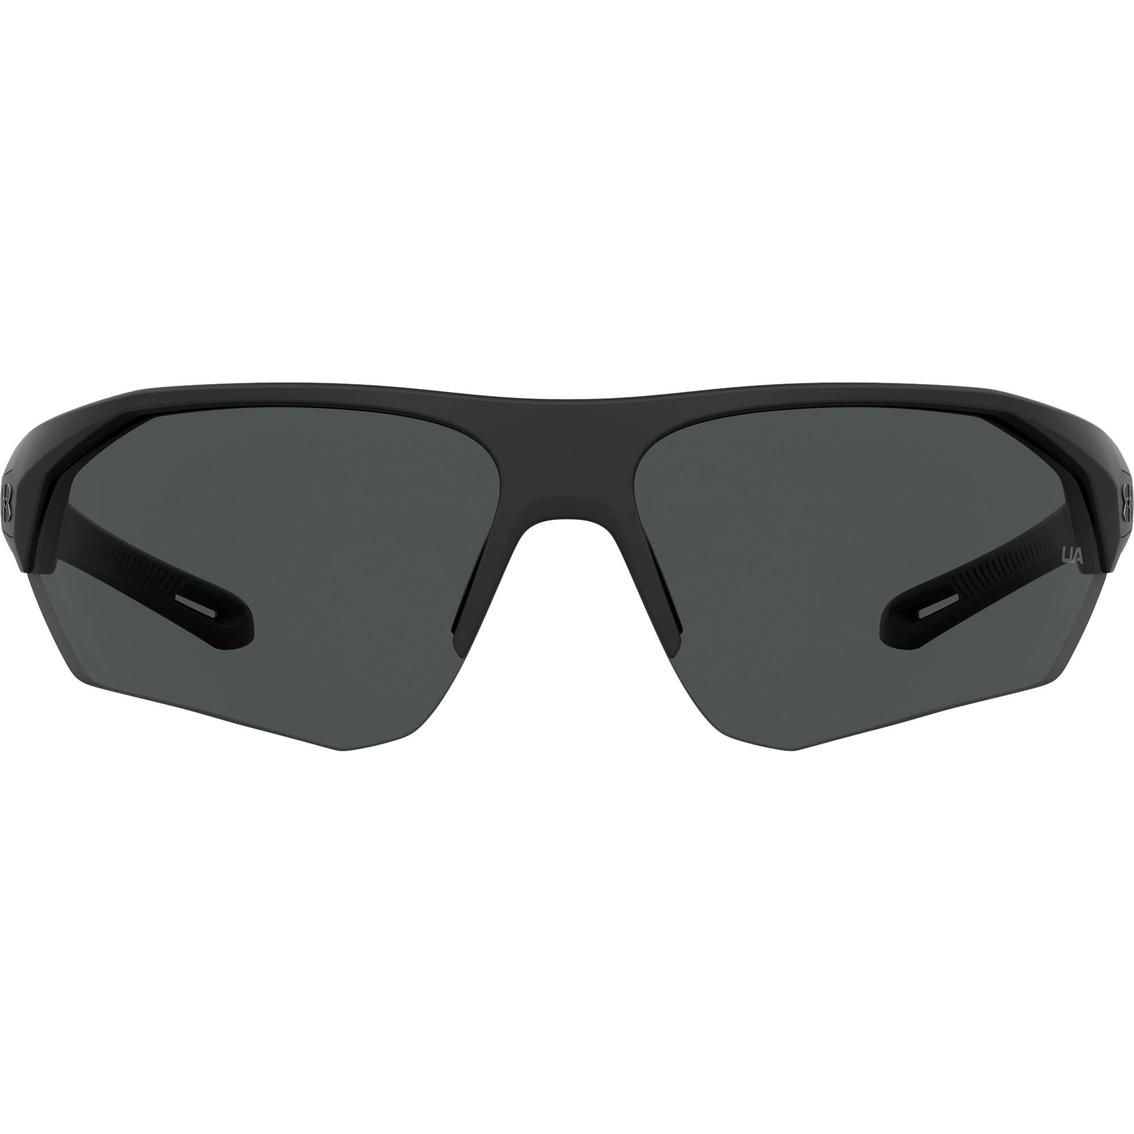 Under Armour UA0001/GS Dual Lens Rectangle Sunglasses - Image 2 of 4